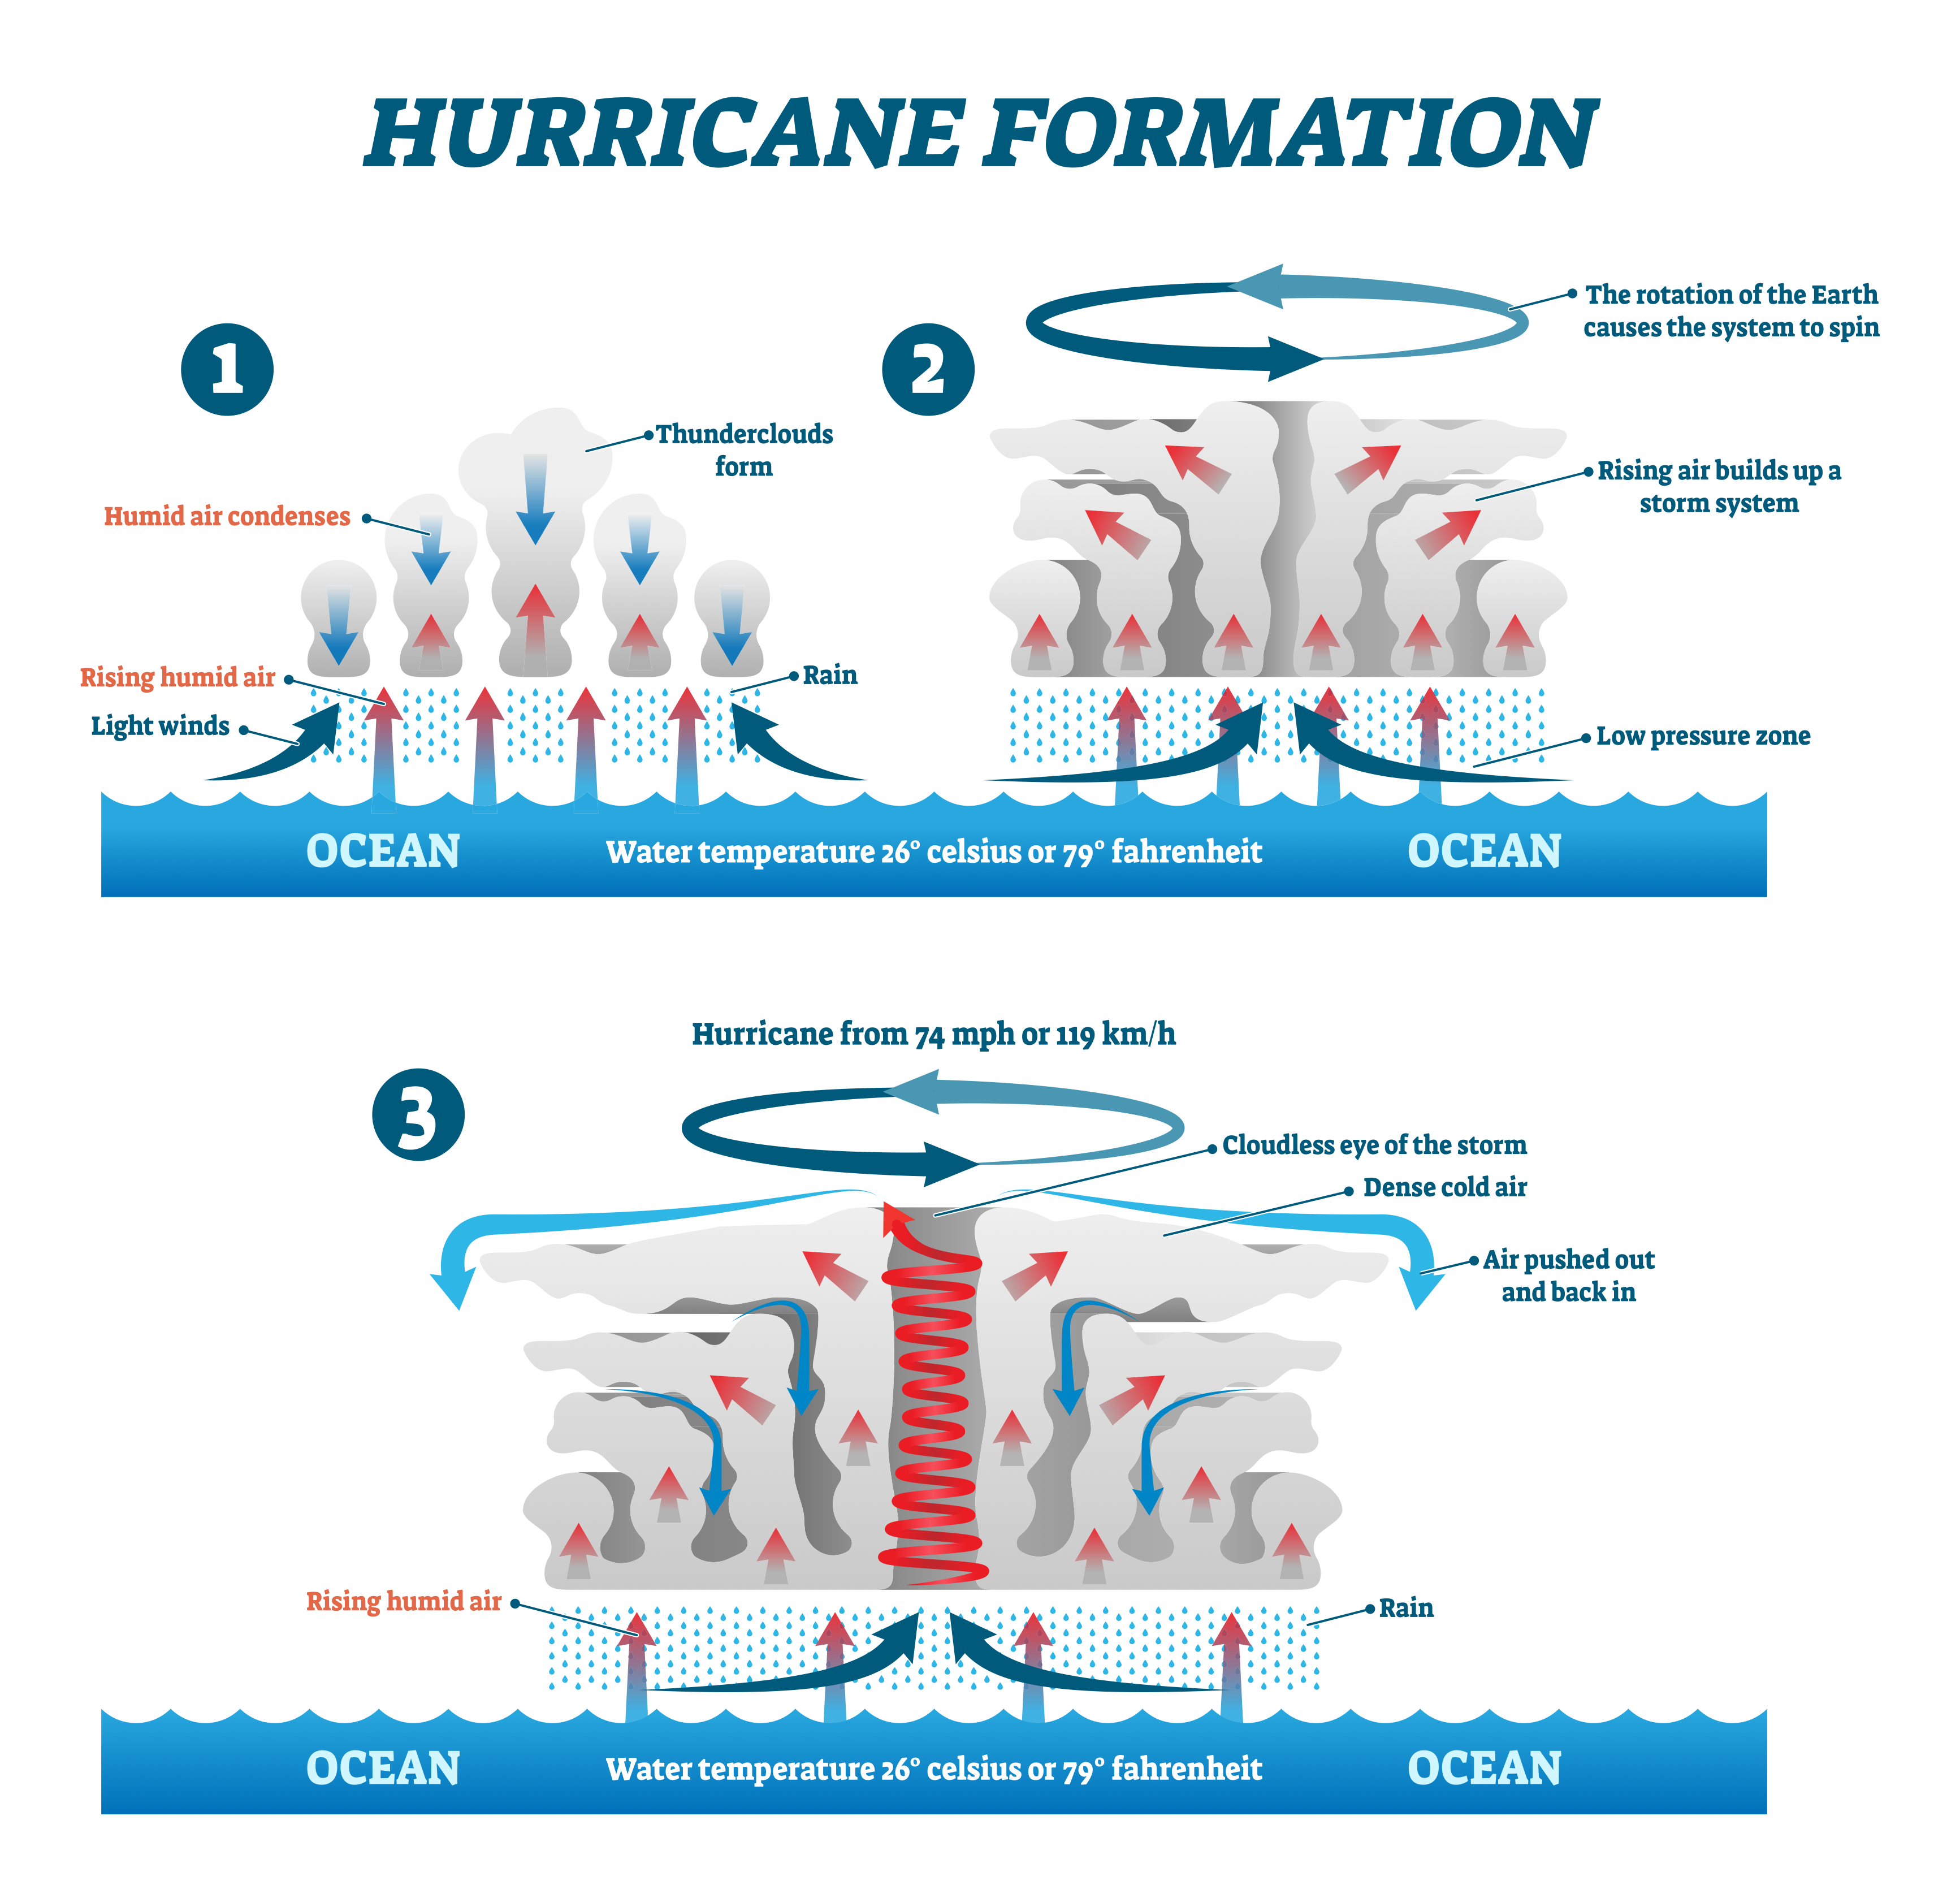 How do tropical storms form?